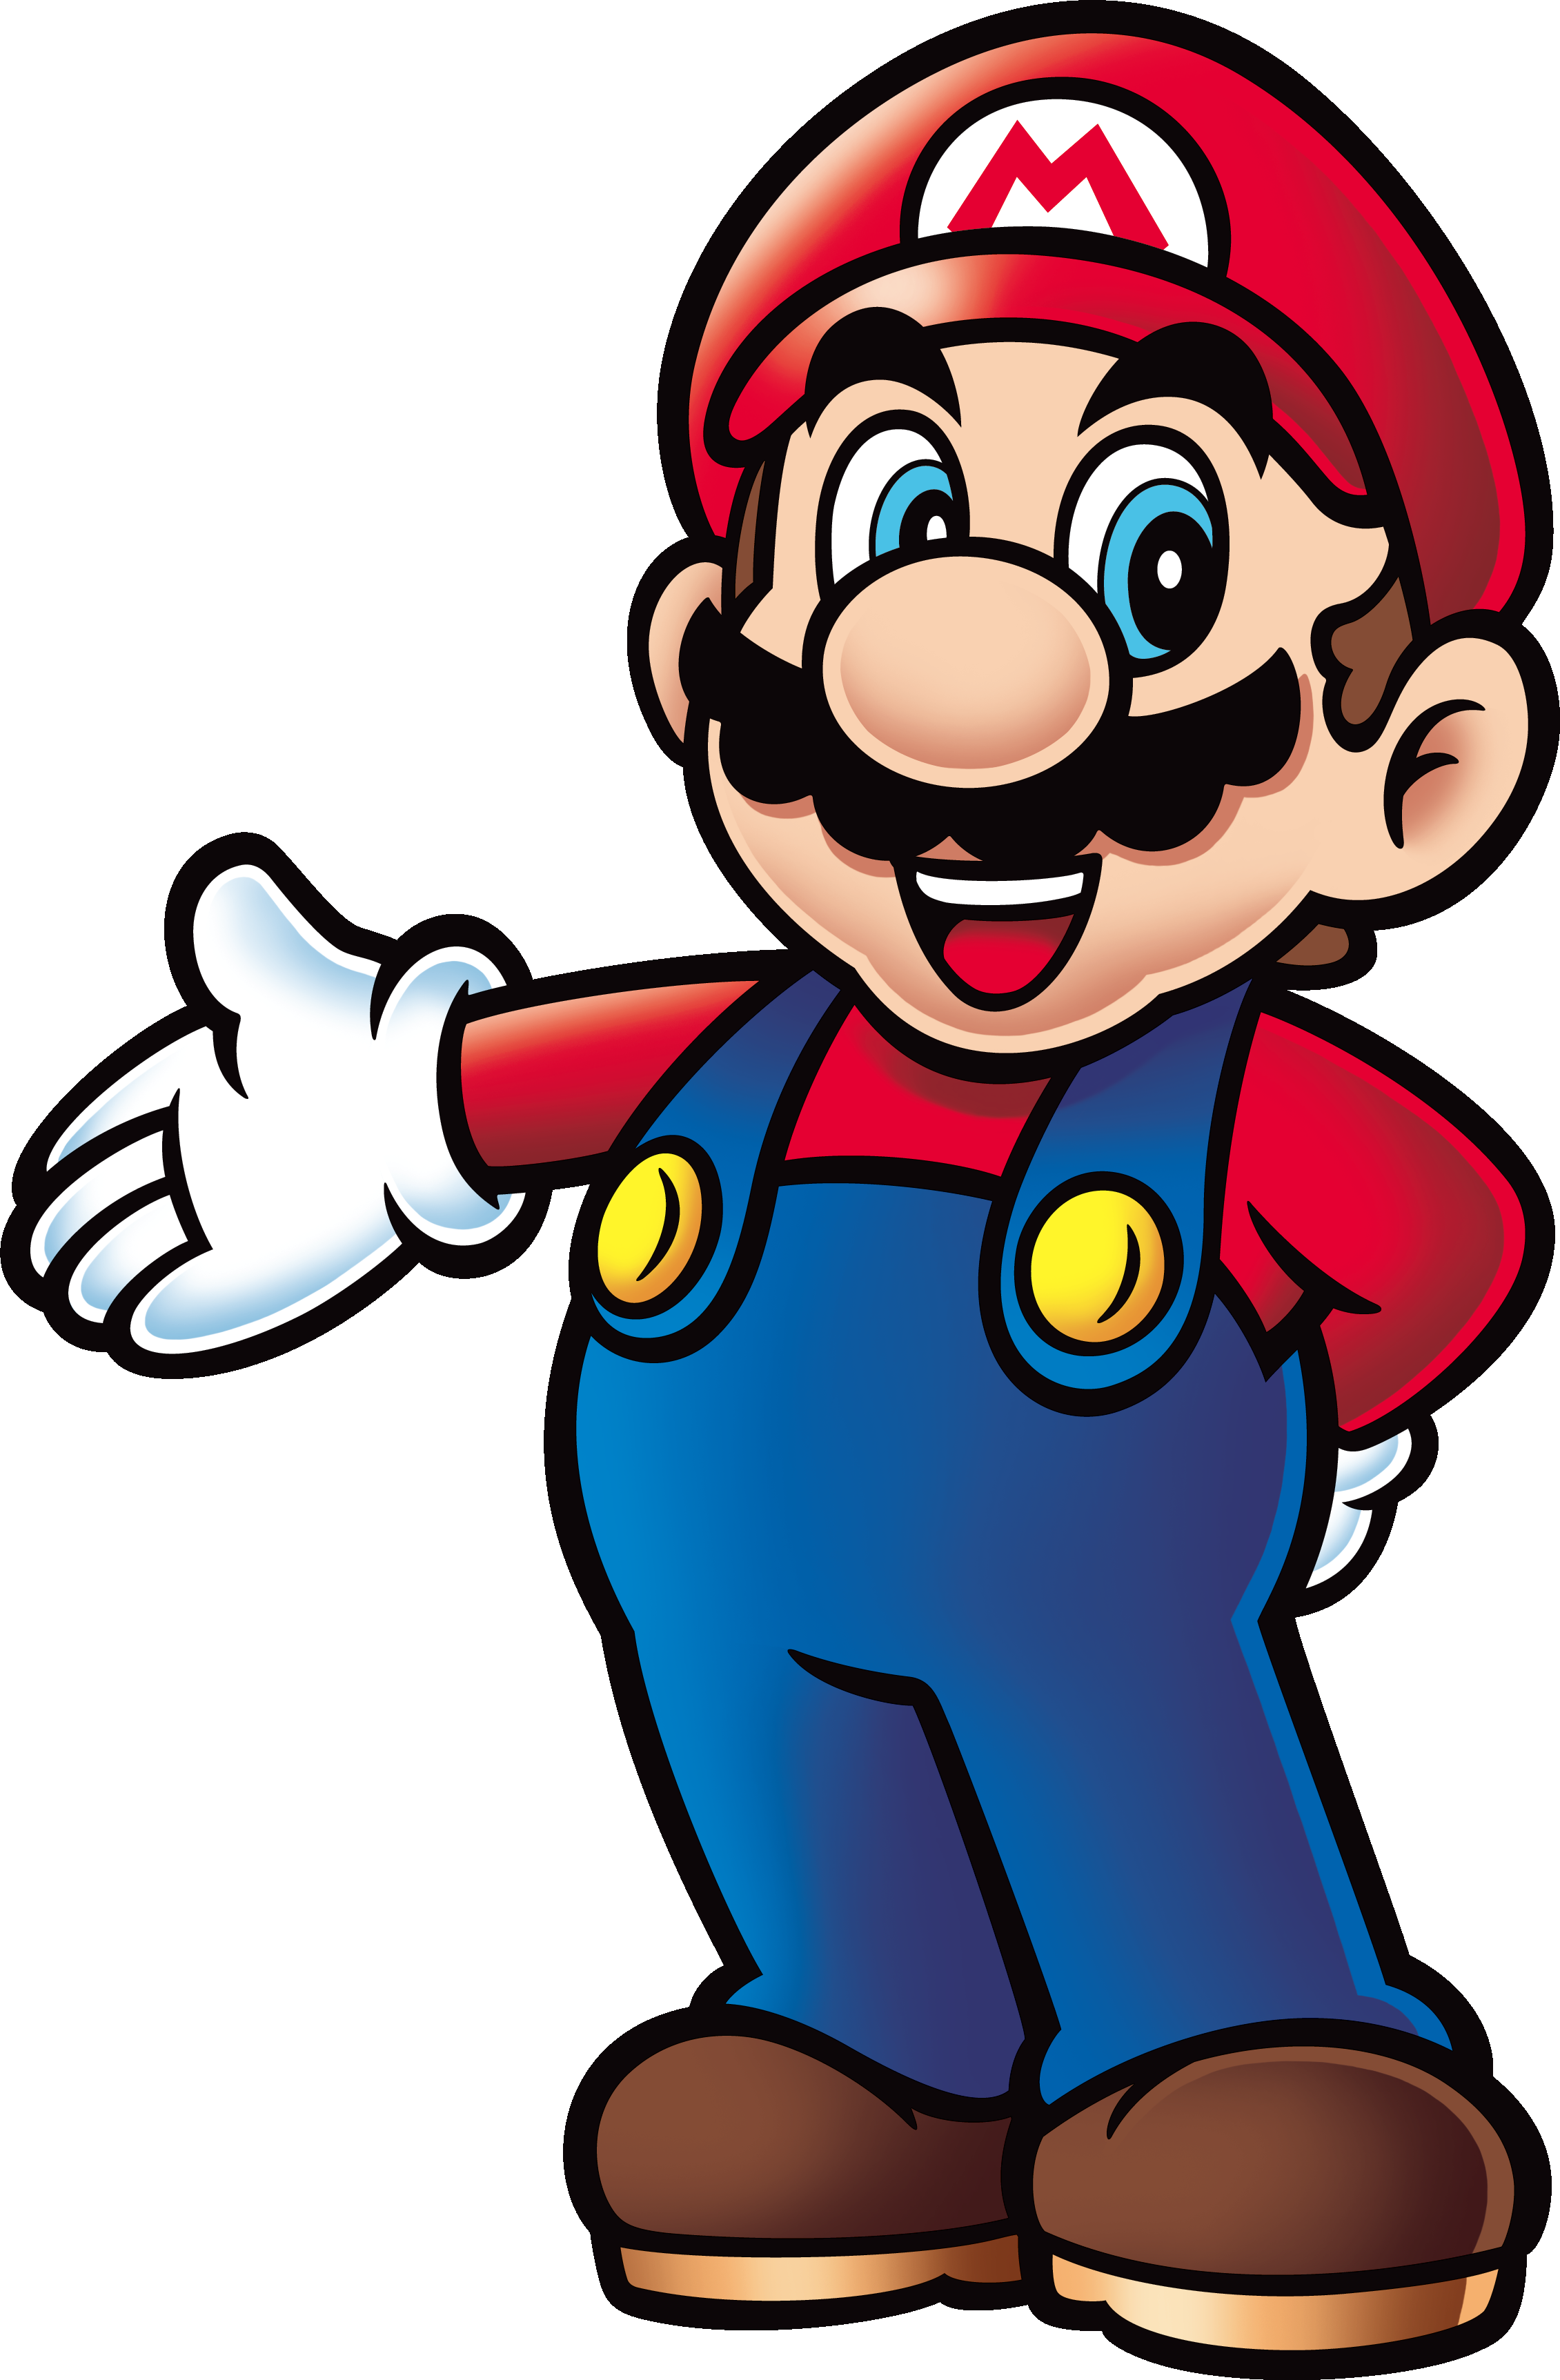 Top Trumps Match Super Mario (2261x3450)